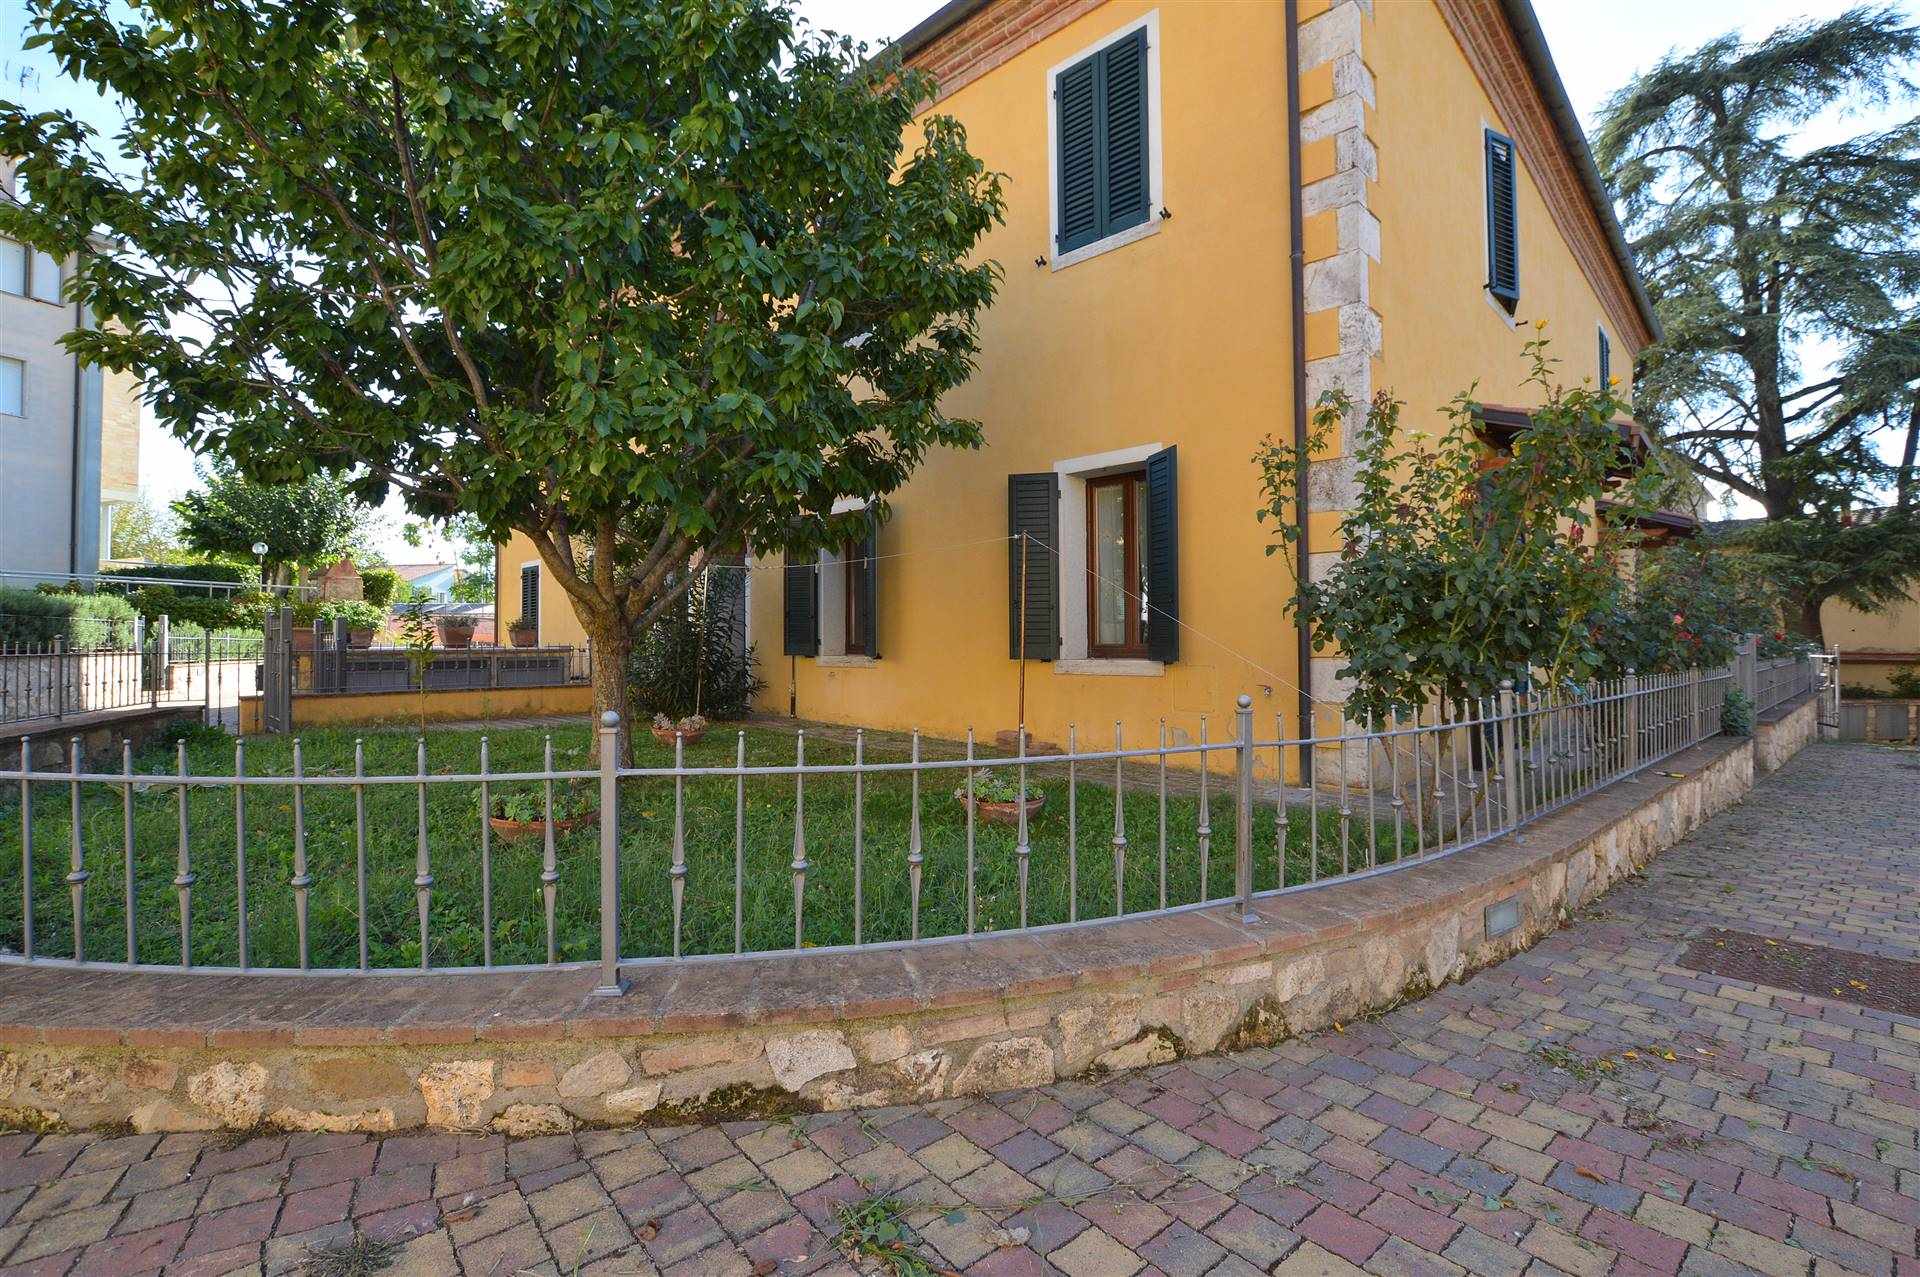 Rapolano Terme, in piacevole contesto residenziale di recente costruzione, proponiamo appartamento al piano terra con ingresso indipendente e 